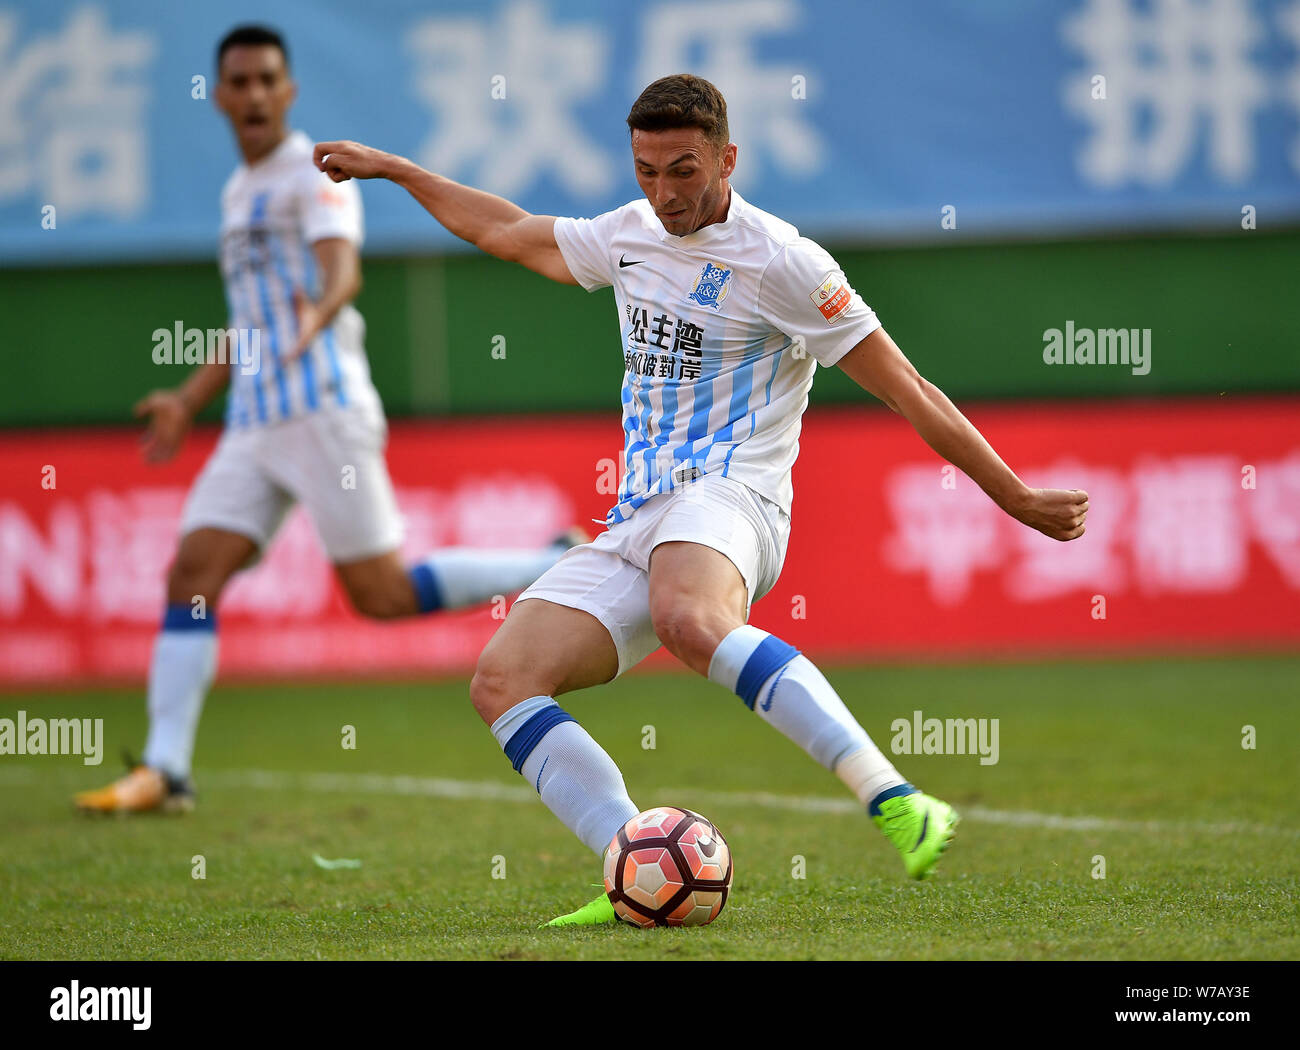 Joueur de football australien grec Apostolos Giannou de Guangzhou R&F frappe la balle pour faire un shoot contre Tianjin TEDA dans le 29e tour pendant Banque D'Images